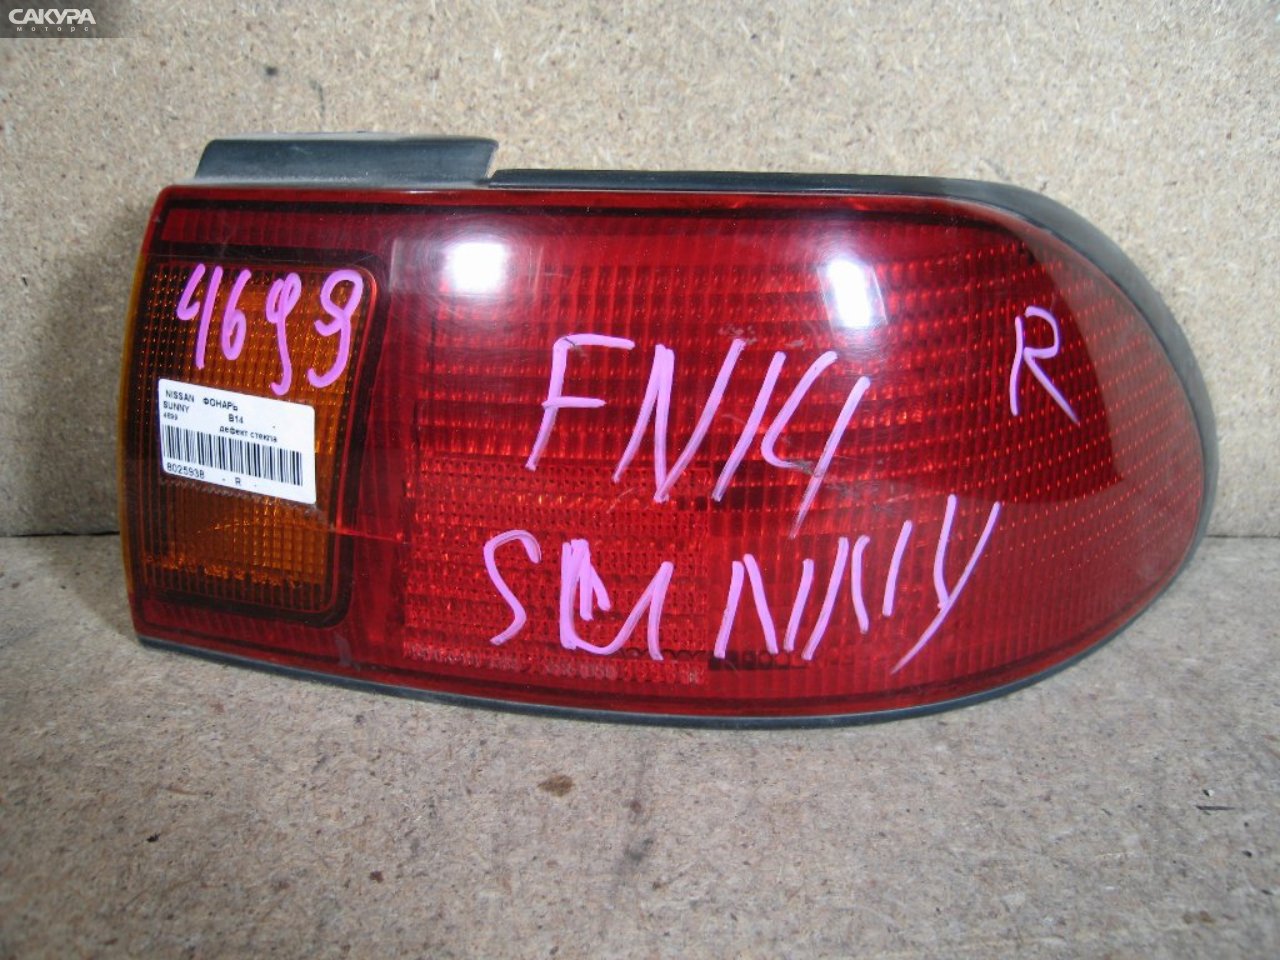 Фонарь стоп-сигнала правый Nissan Sunny B14 4699: купить в Сакура Абакан.